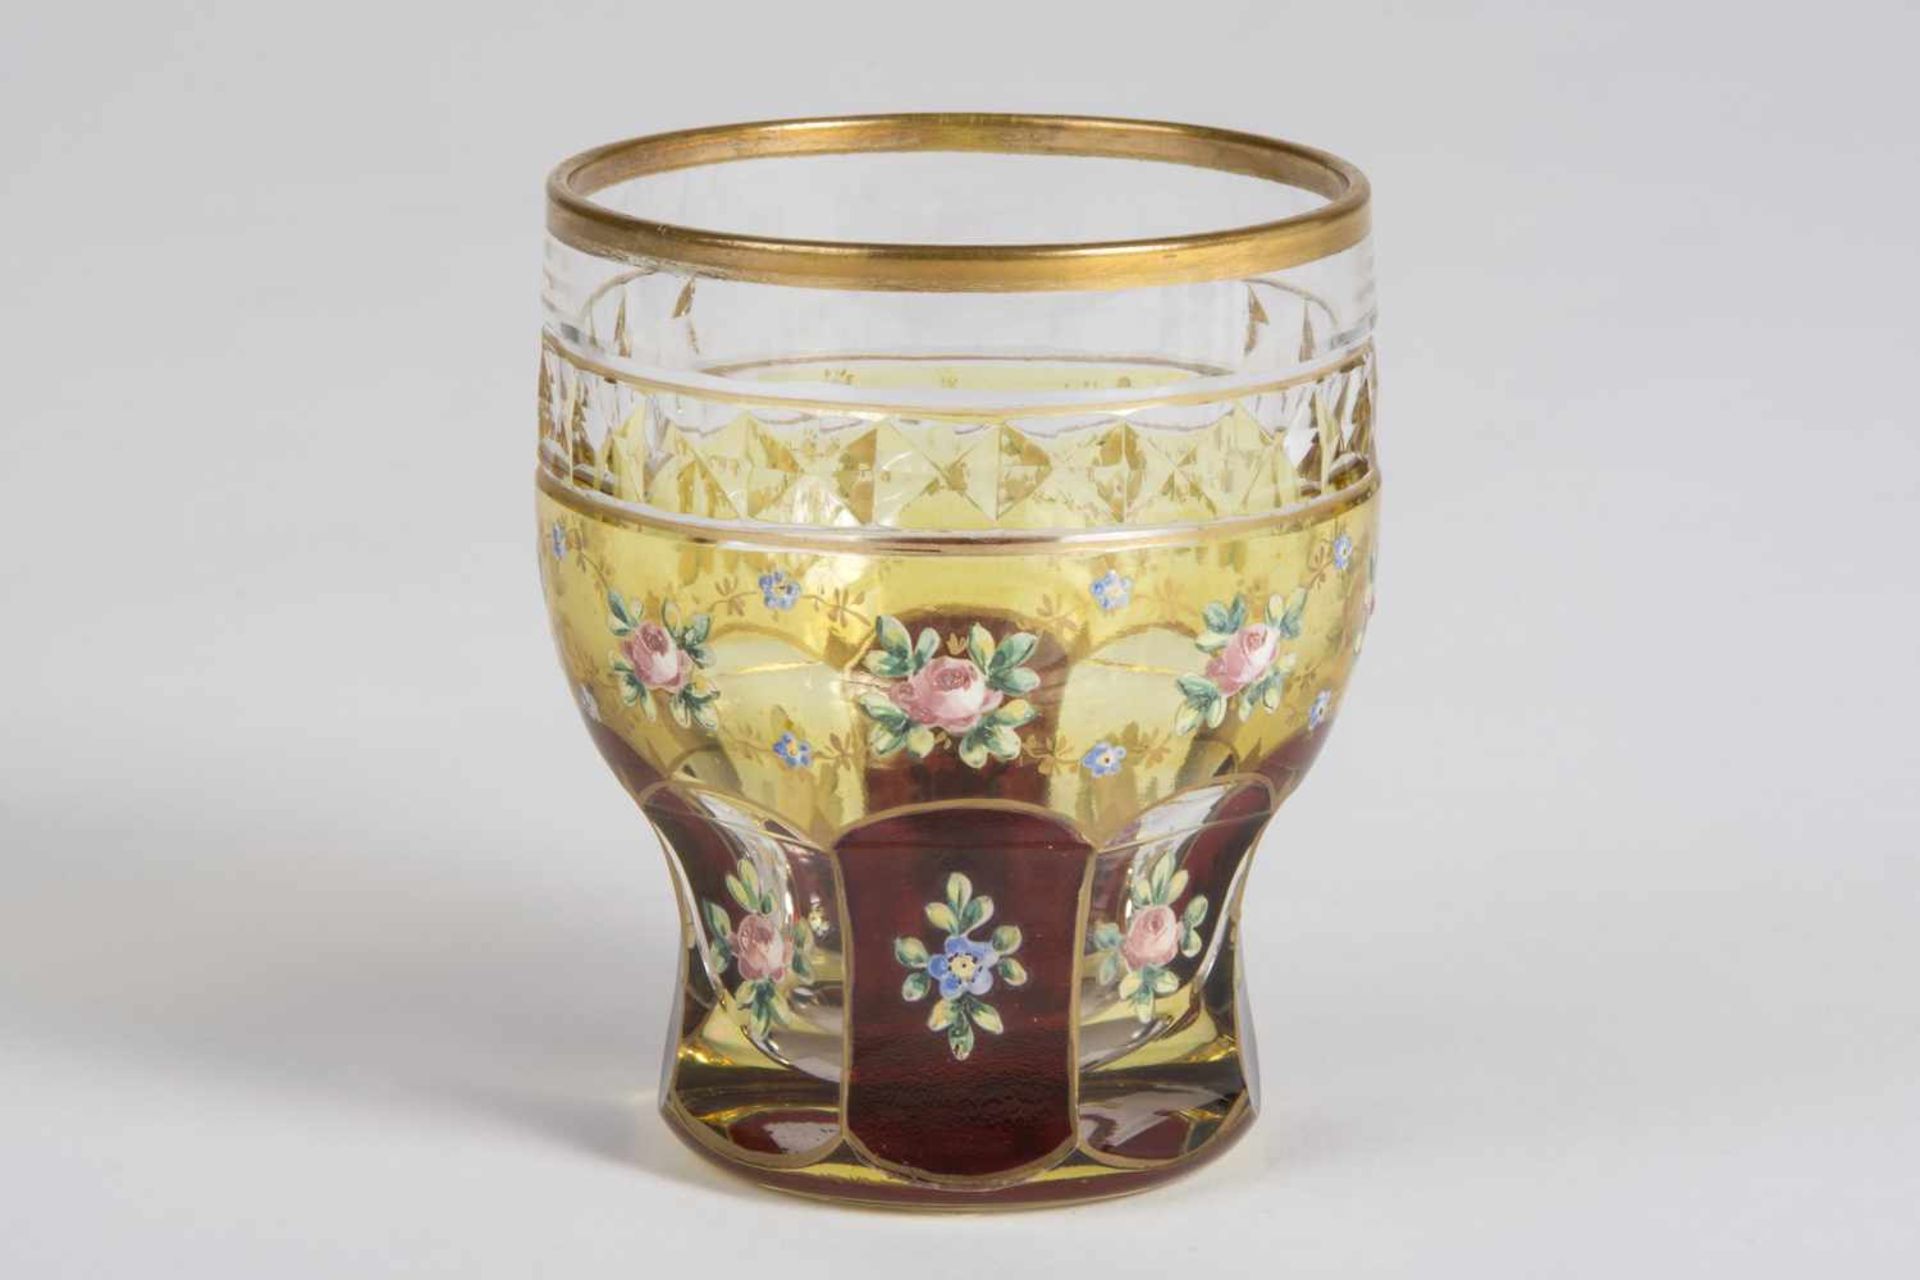 Biedermeier Becher um 1830 farbloses Glas, gelb und rot gestrichen, geschliffene Bordüre und florale